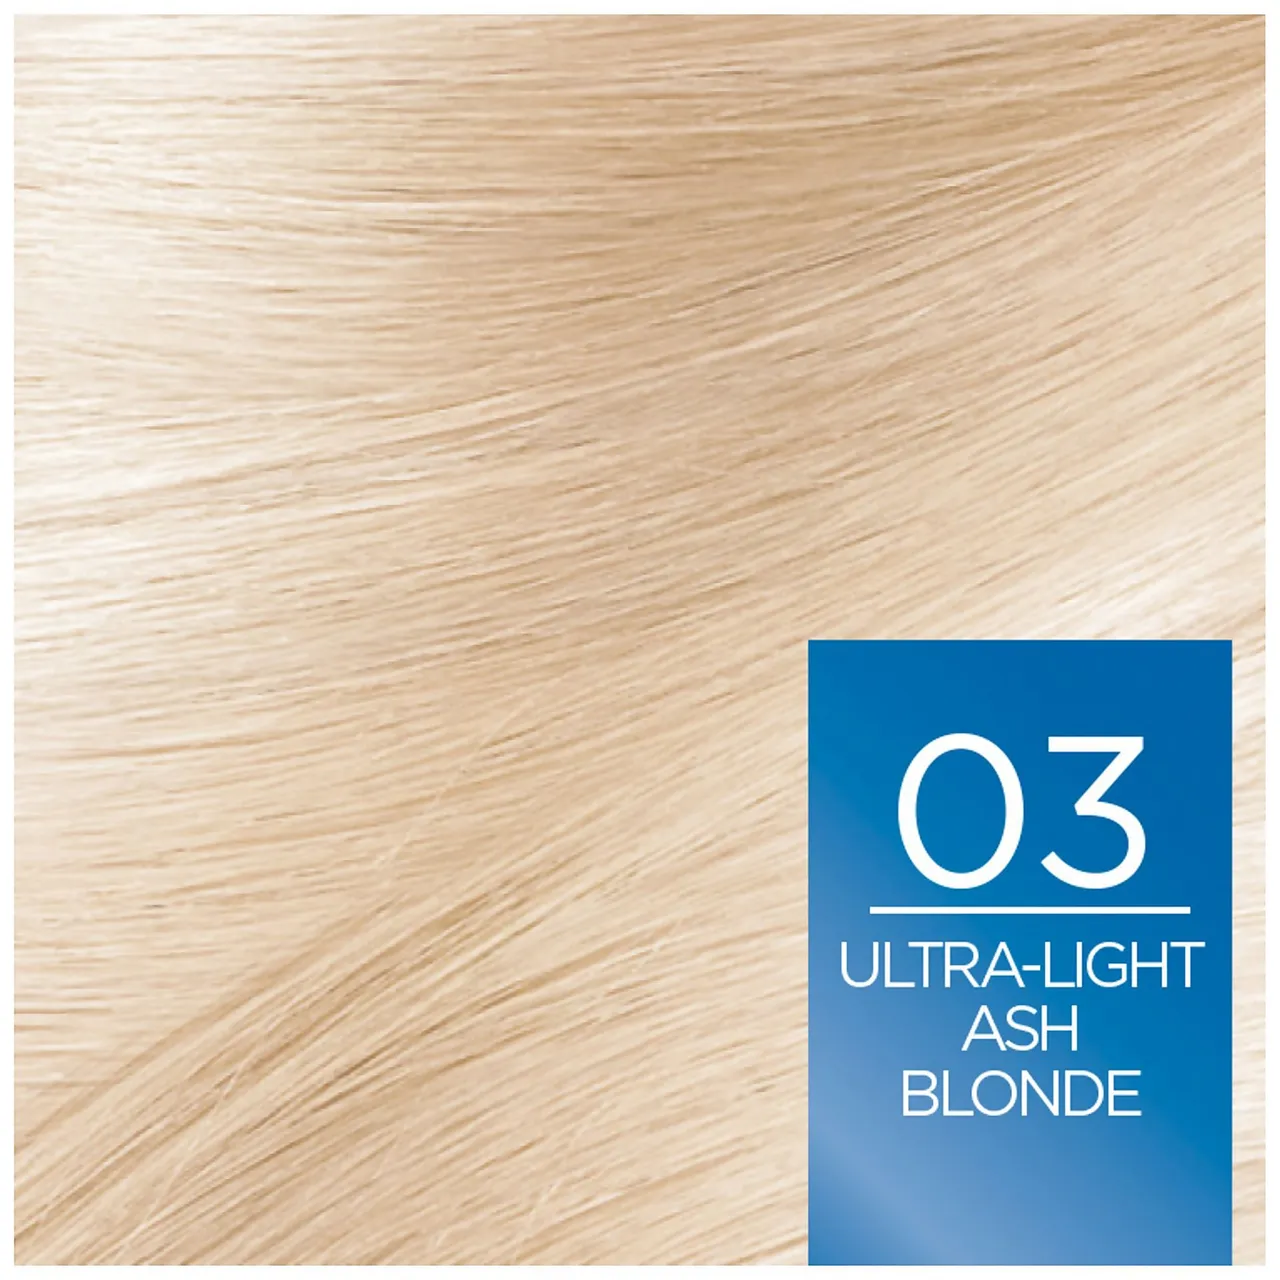 L'Oréal Paris Excellence Crème Permanent Hair Dye (Various Shades) - 03 Ultra-Light Ash Blonde